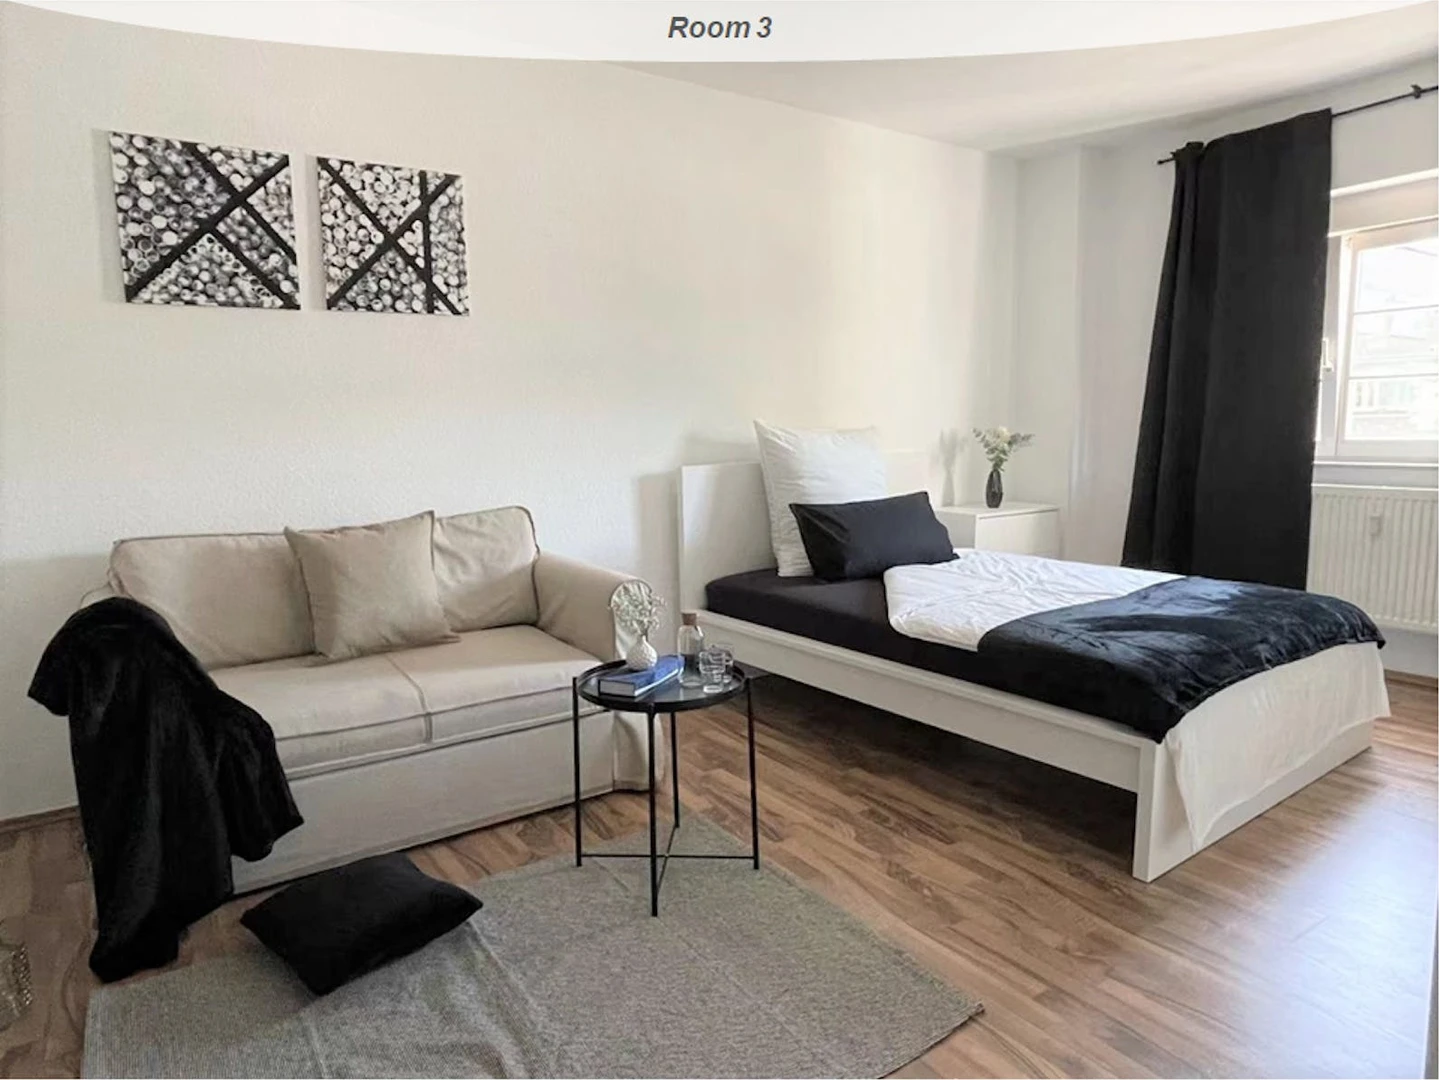 Alquiler de habitación en piso compartido en mannheim